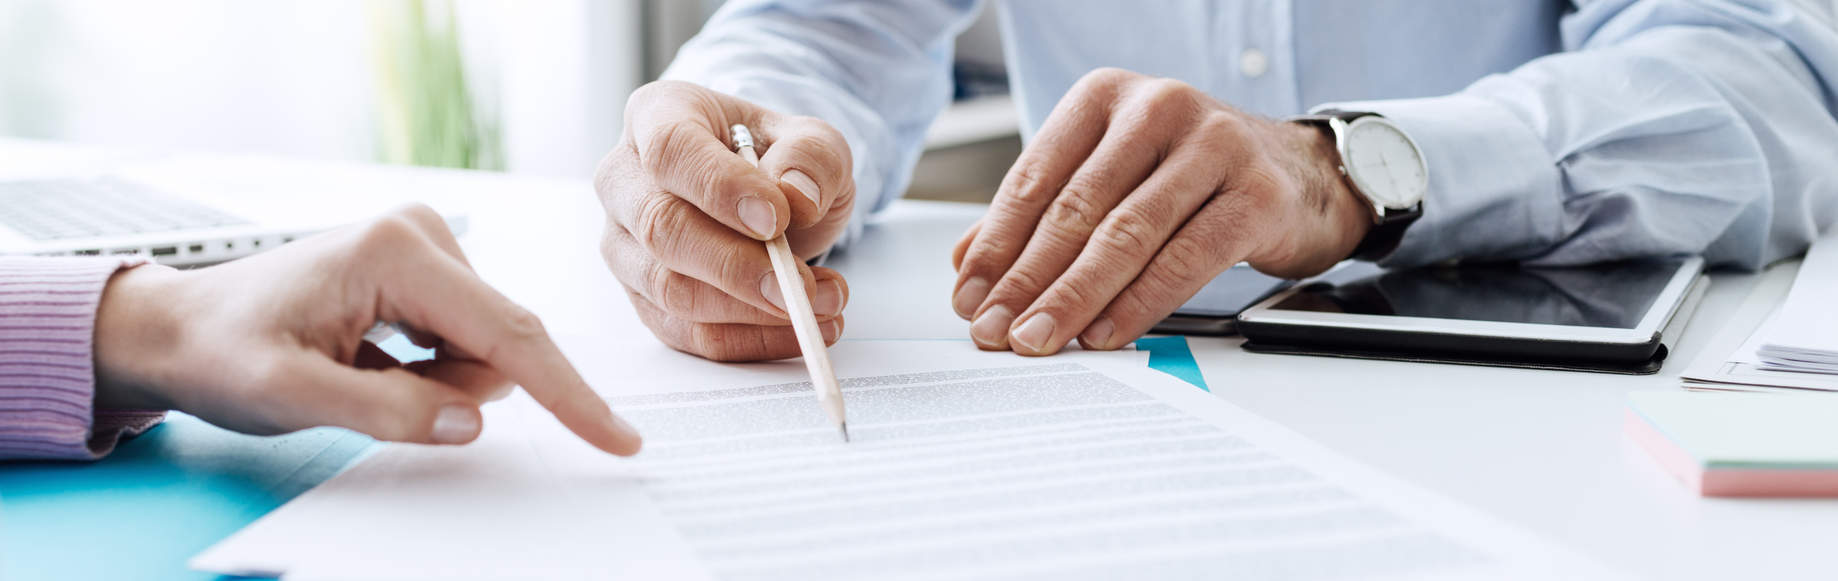 Nahaufnahme von Händen bei der Vertragsunterschrift - bildlich für Honorarvereinbarung beim Versicherungsberater